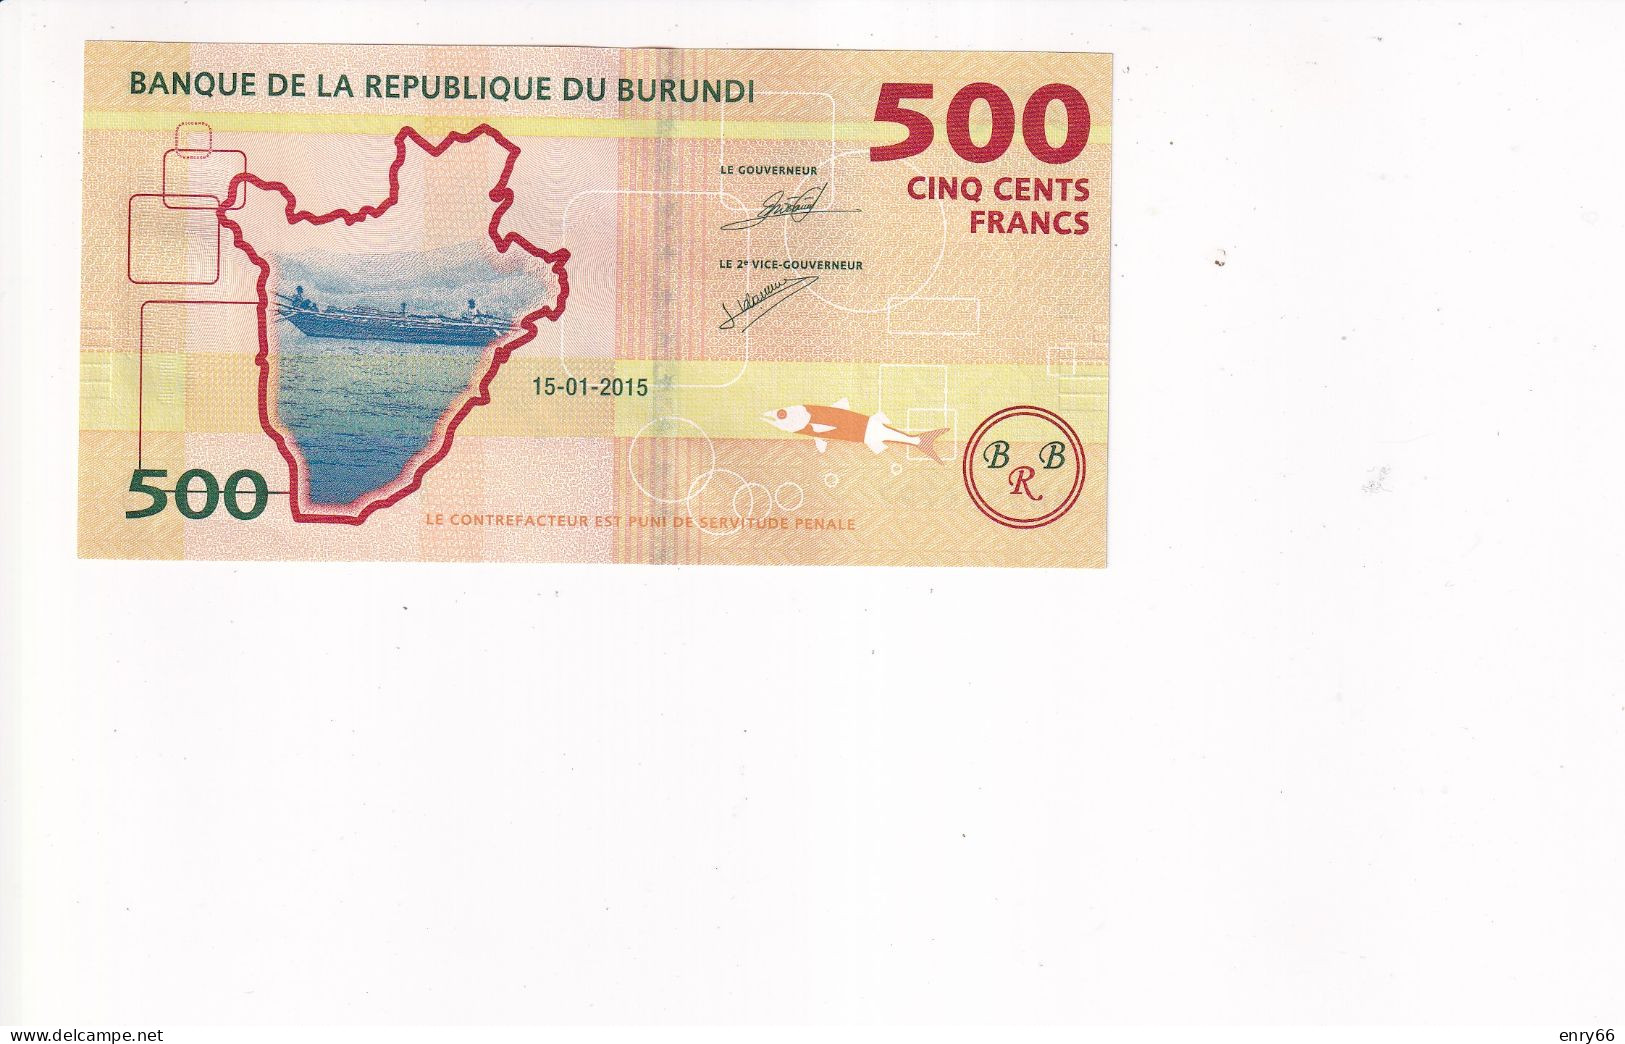 BURUNDI 500 FRANCS 2015  UNC - Burundi